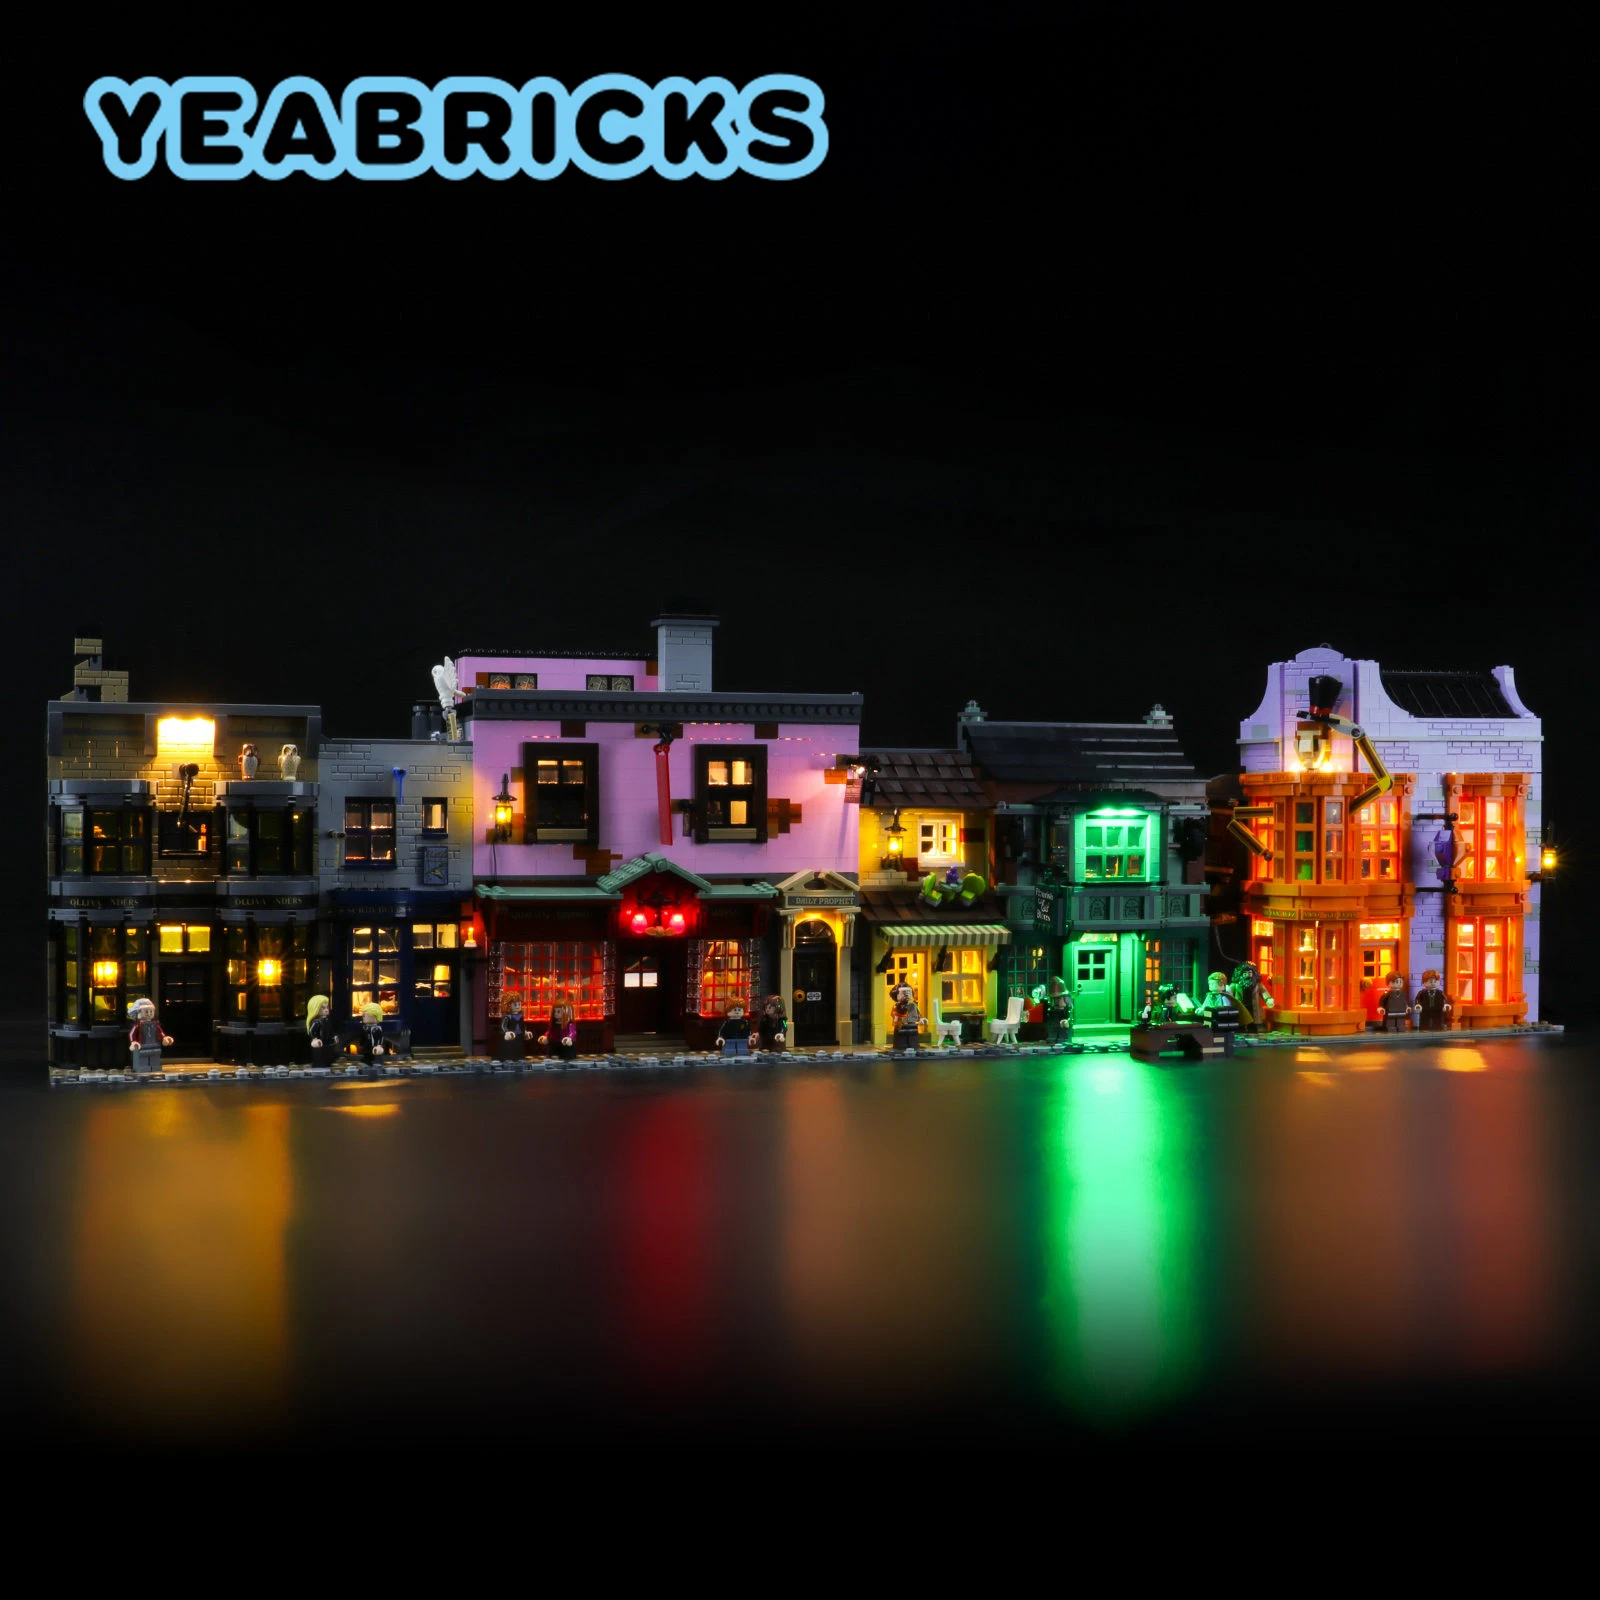 YEABRICKS LED Light Kit for 75978 Building Blocks Set (NOT Include the Model) Bricks Toys for Children